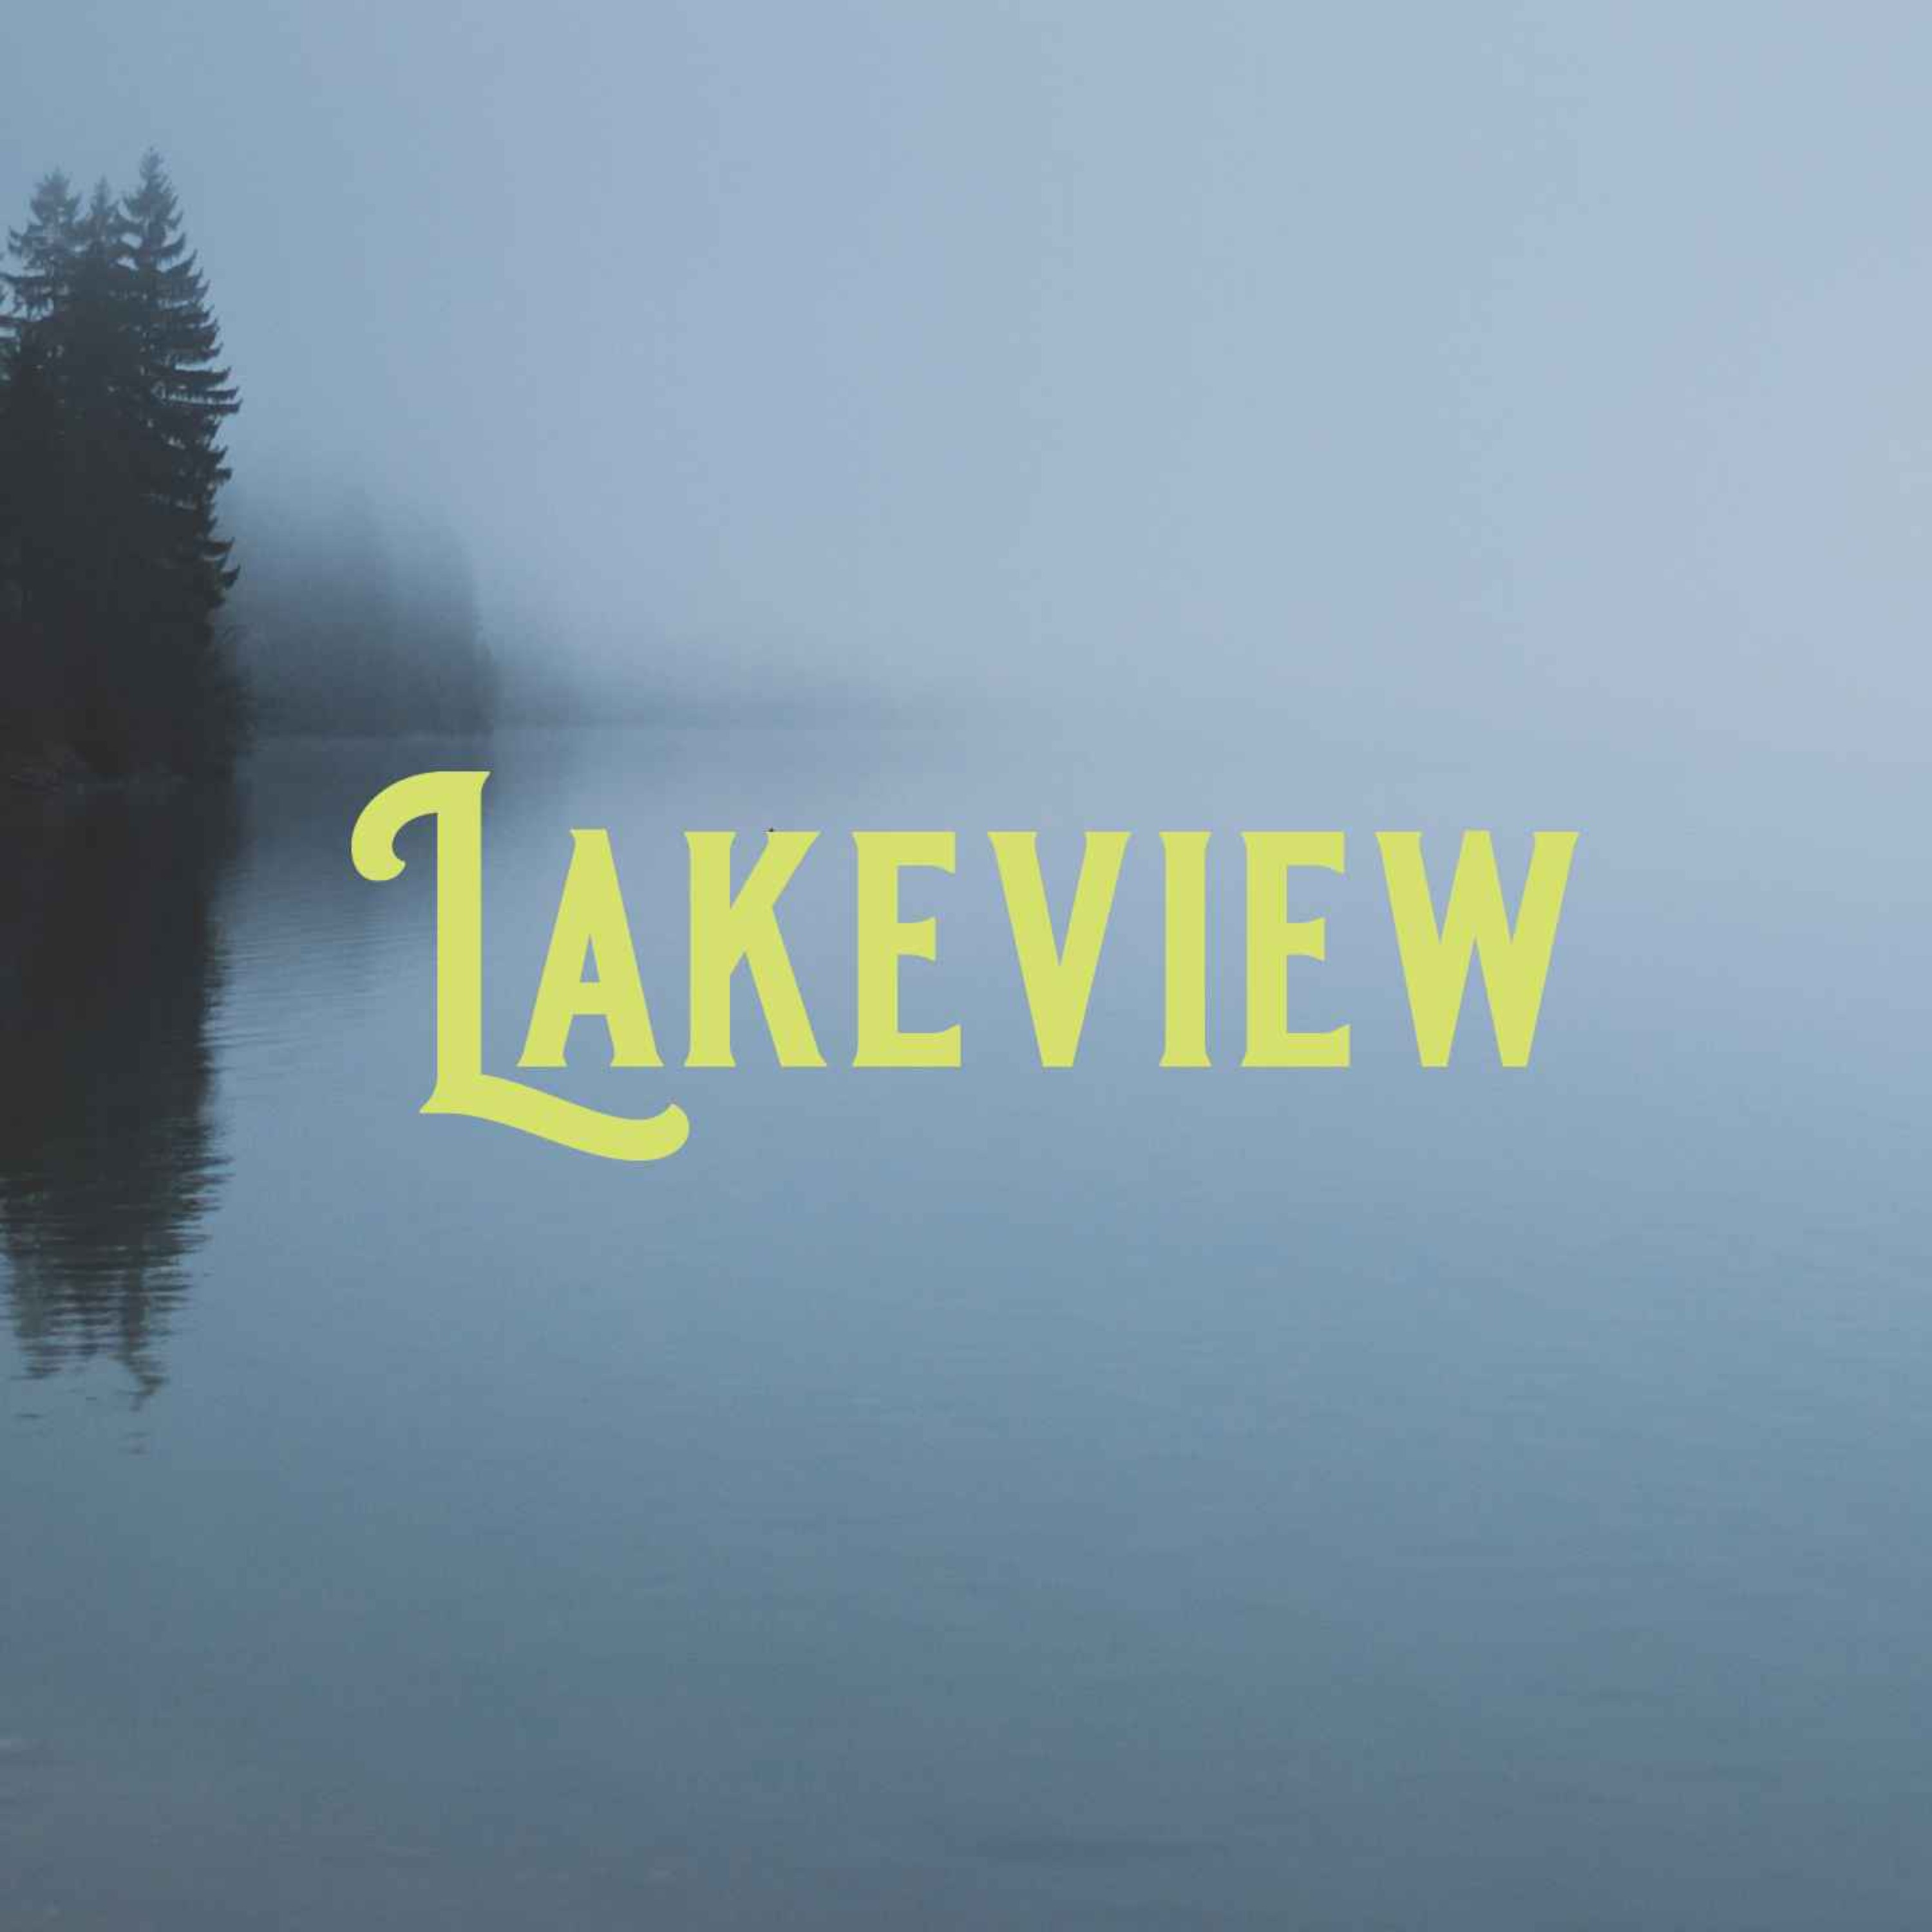 Lakeview (AP) 3/3 - Renovations